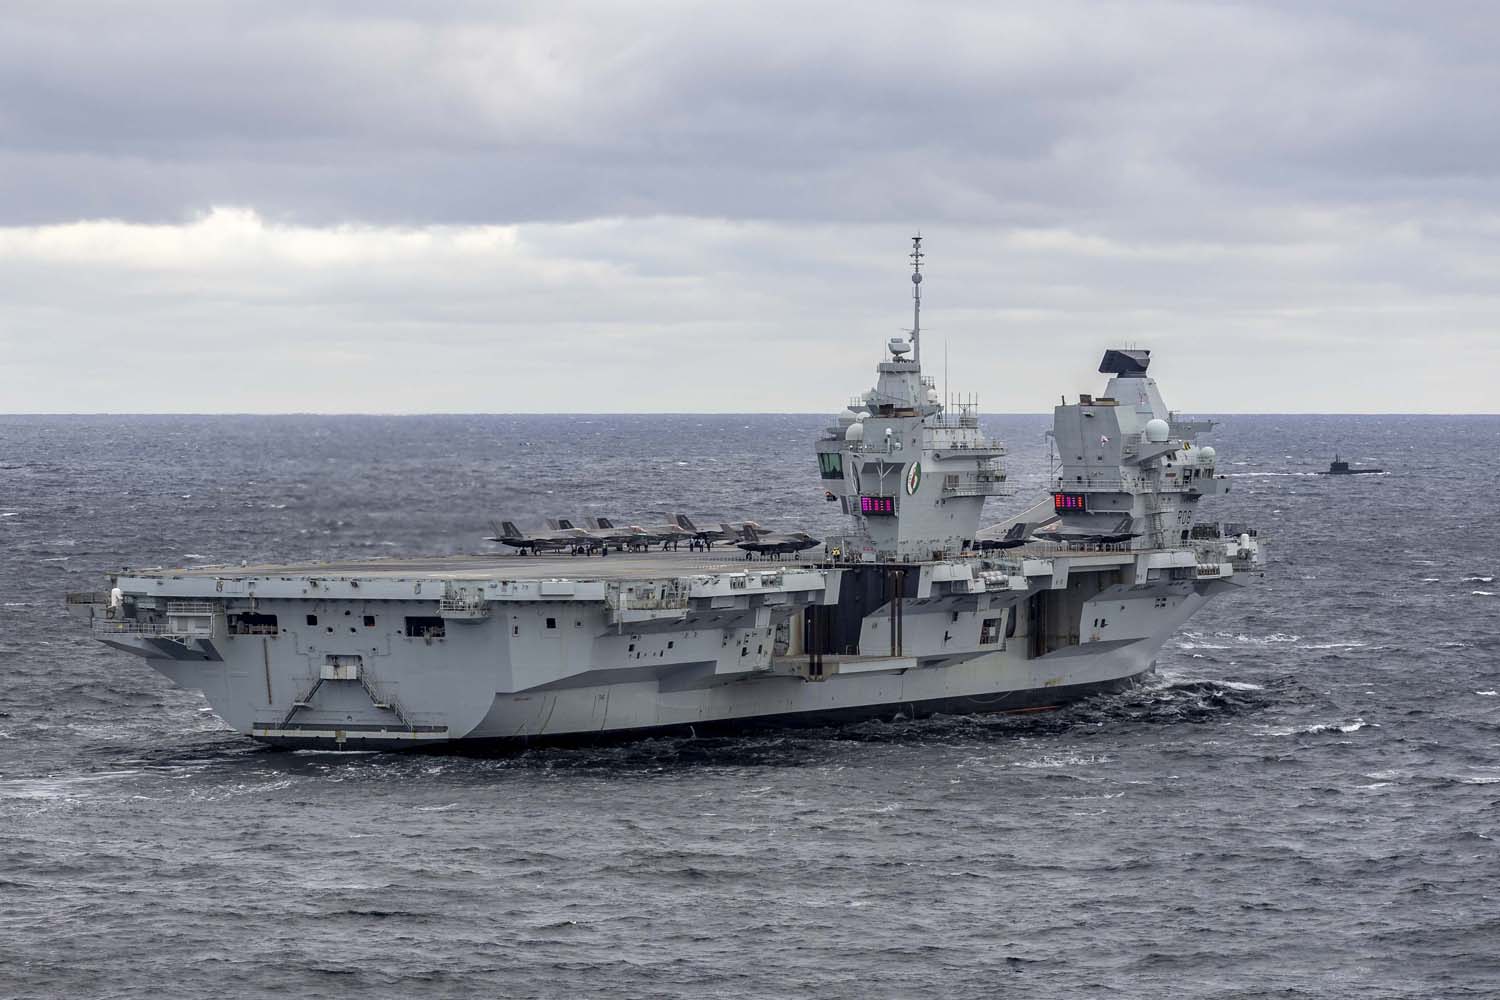 El portaaviones británico HMS Queen Elizabeth, que transporta cazas de quinta generación F-35B Lightning II, se ha transferido al mando de la OTAN por primera vez en la historia-14